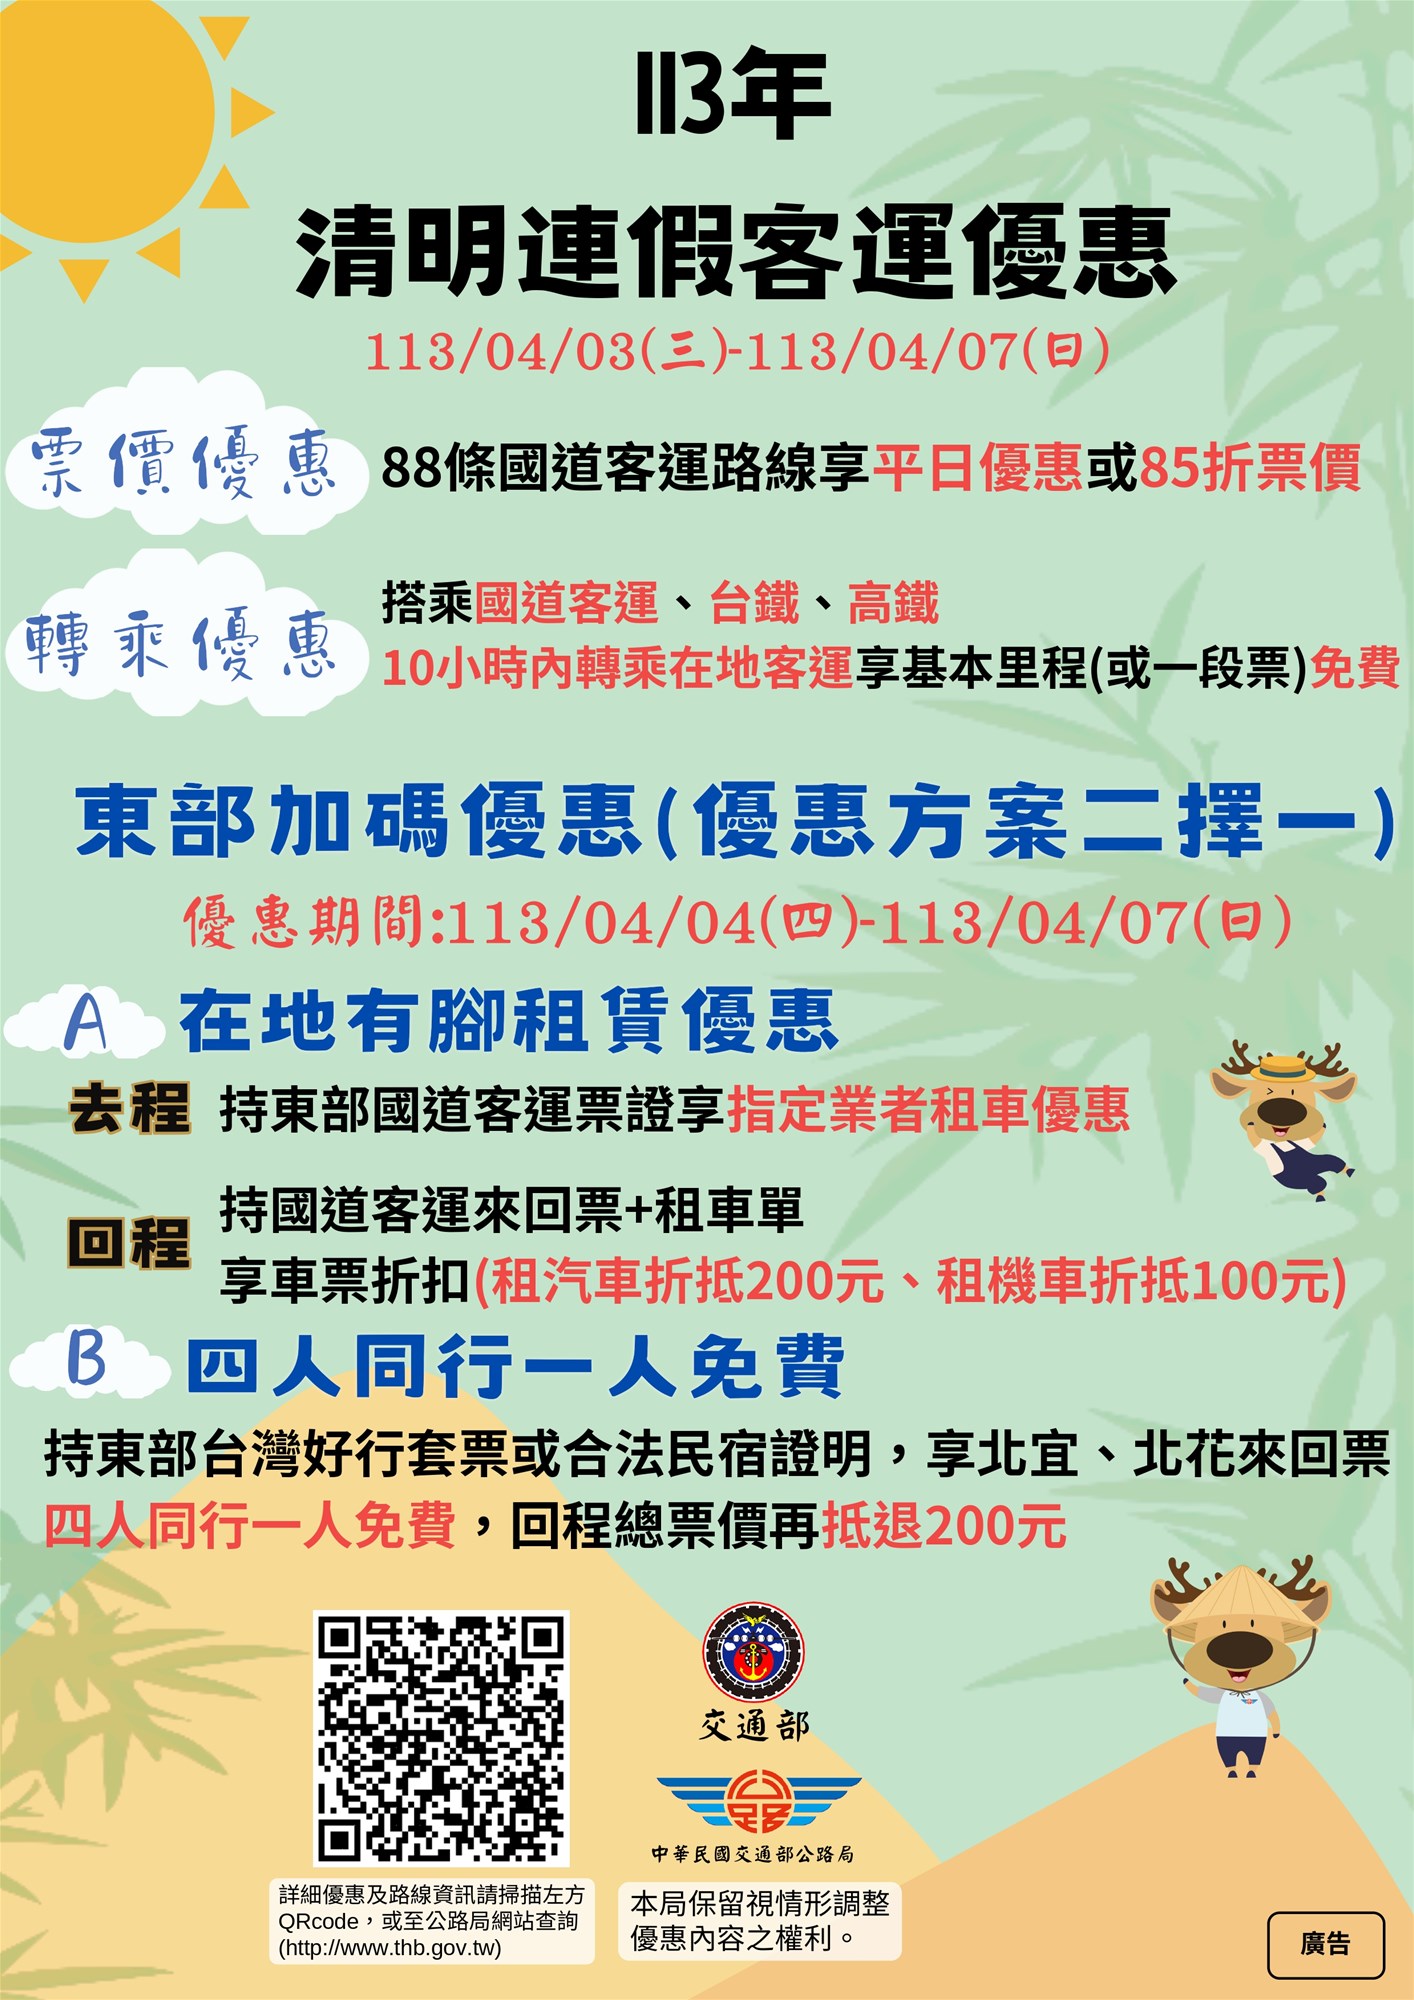 Diskon Transportasi Penumpang Festival Qingming ke-113